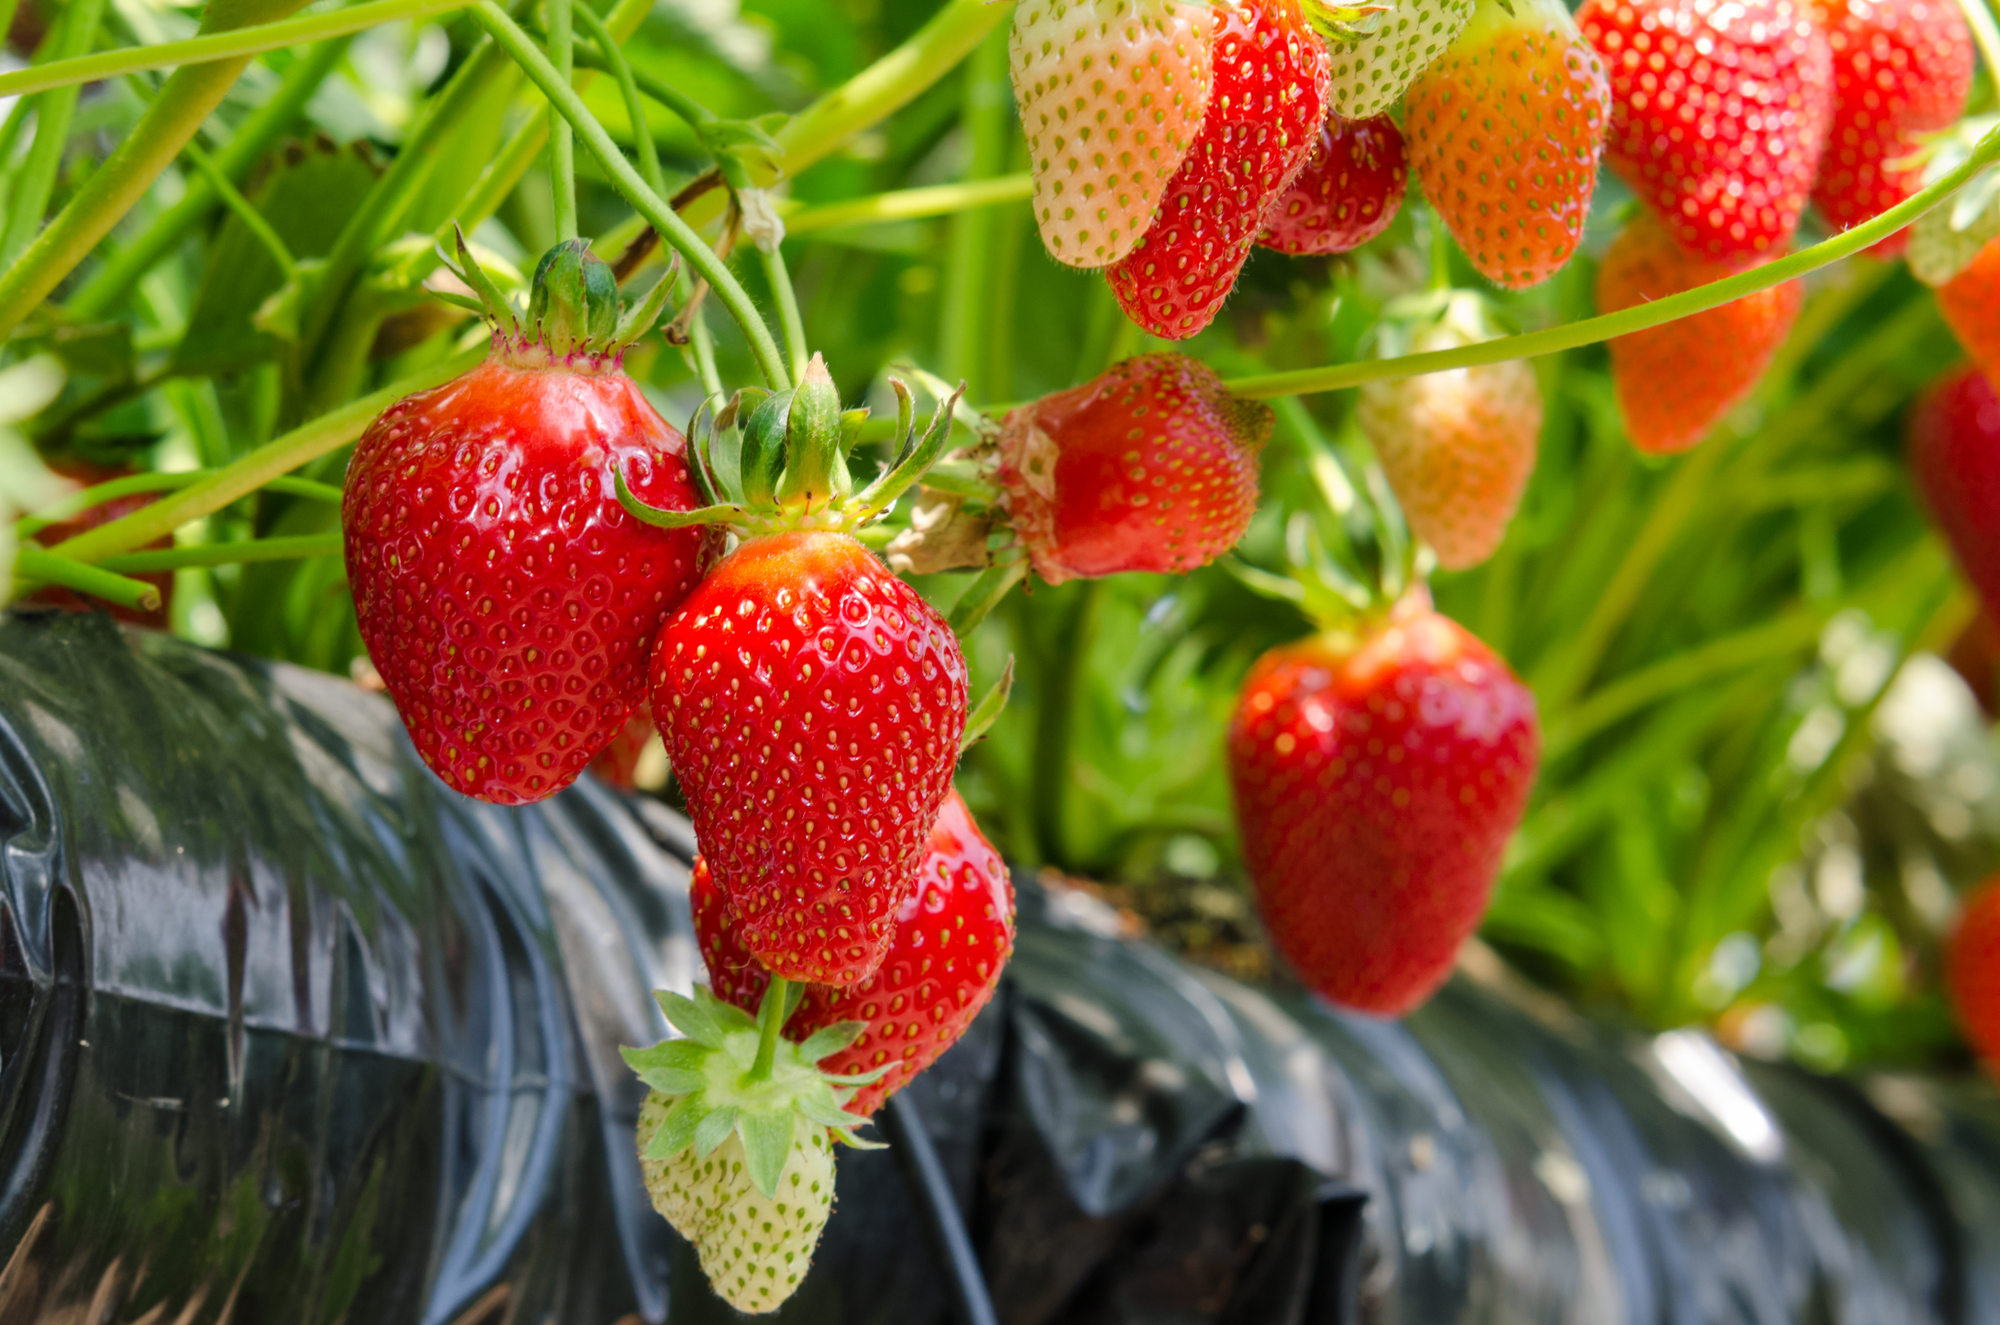 Strawberries being grown